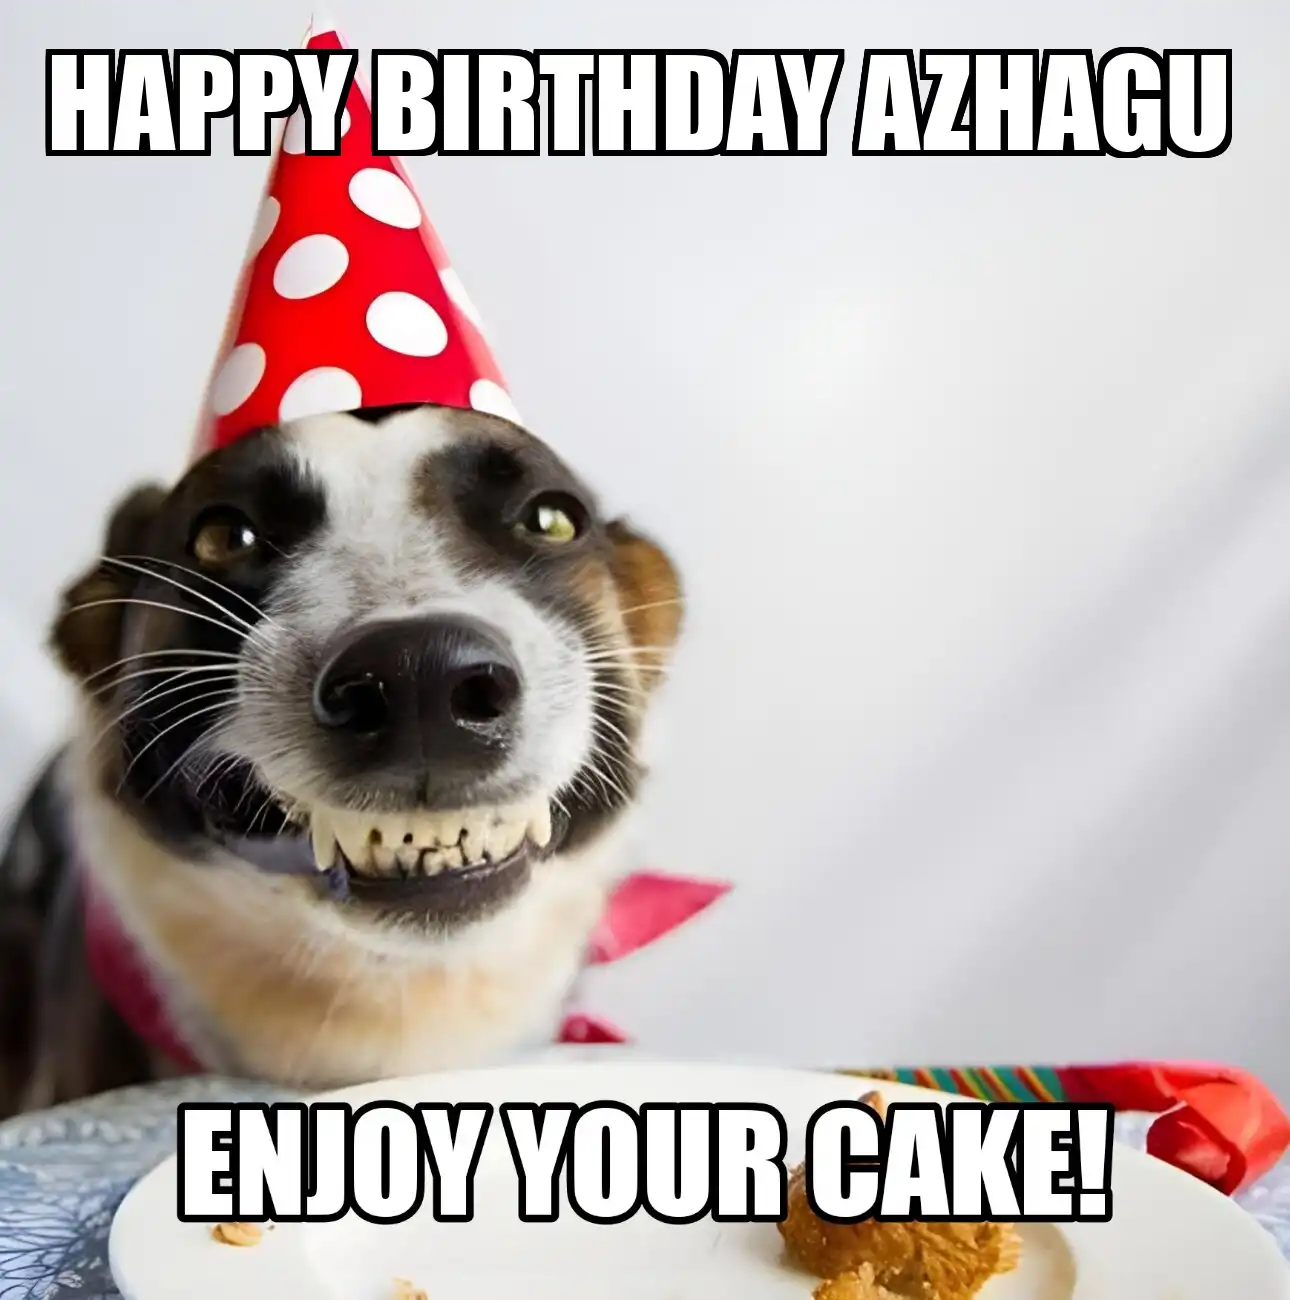 Happy Birthday Azhagu Enjoy Your Cake Dog Meme